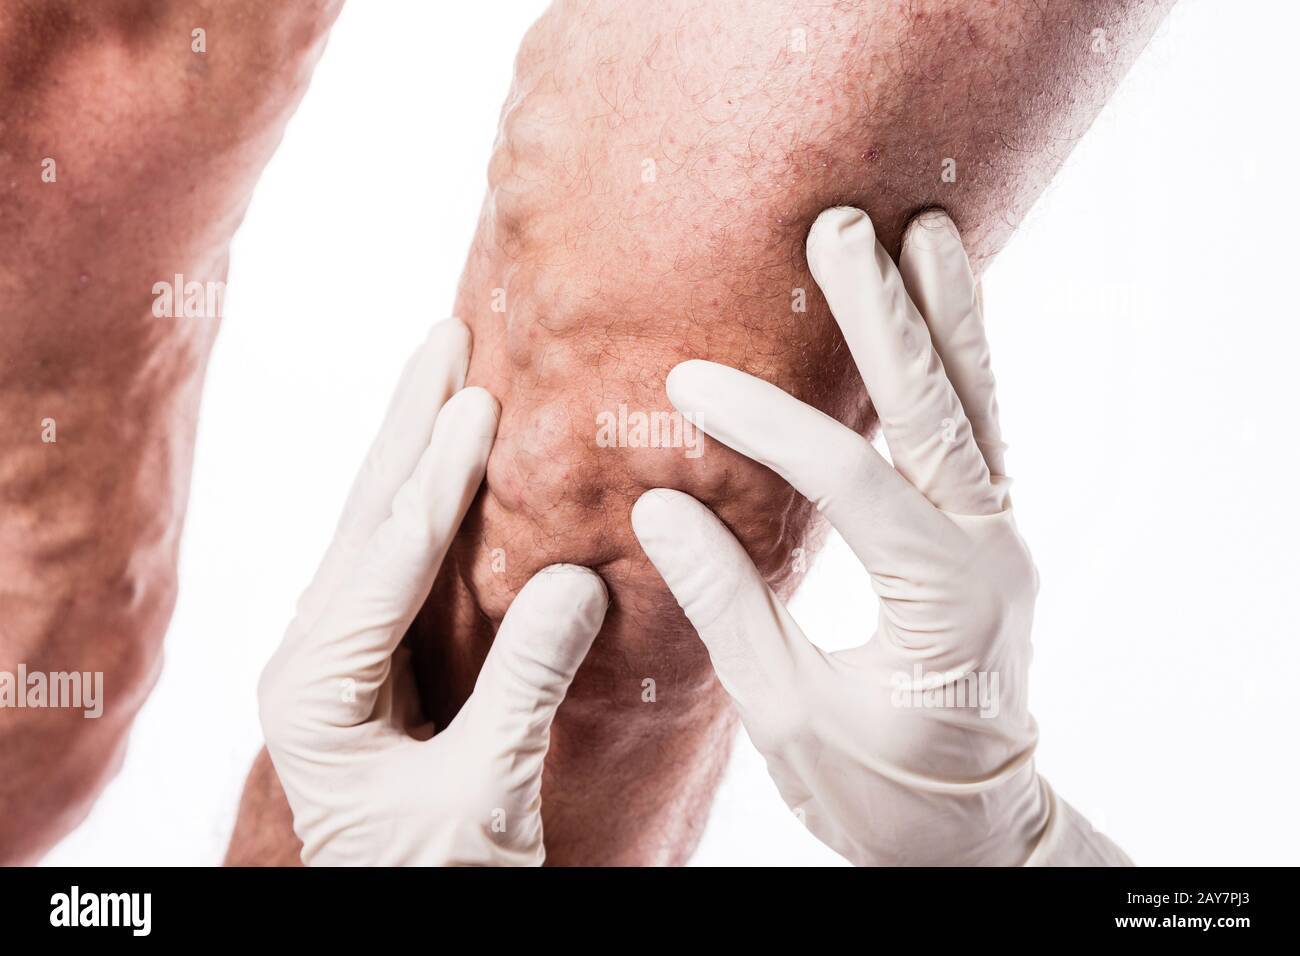 Il medico nei guanti medici esamina una persona con vene varicose o Foto Stock